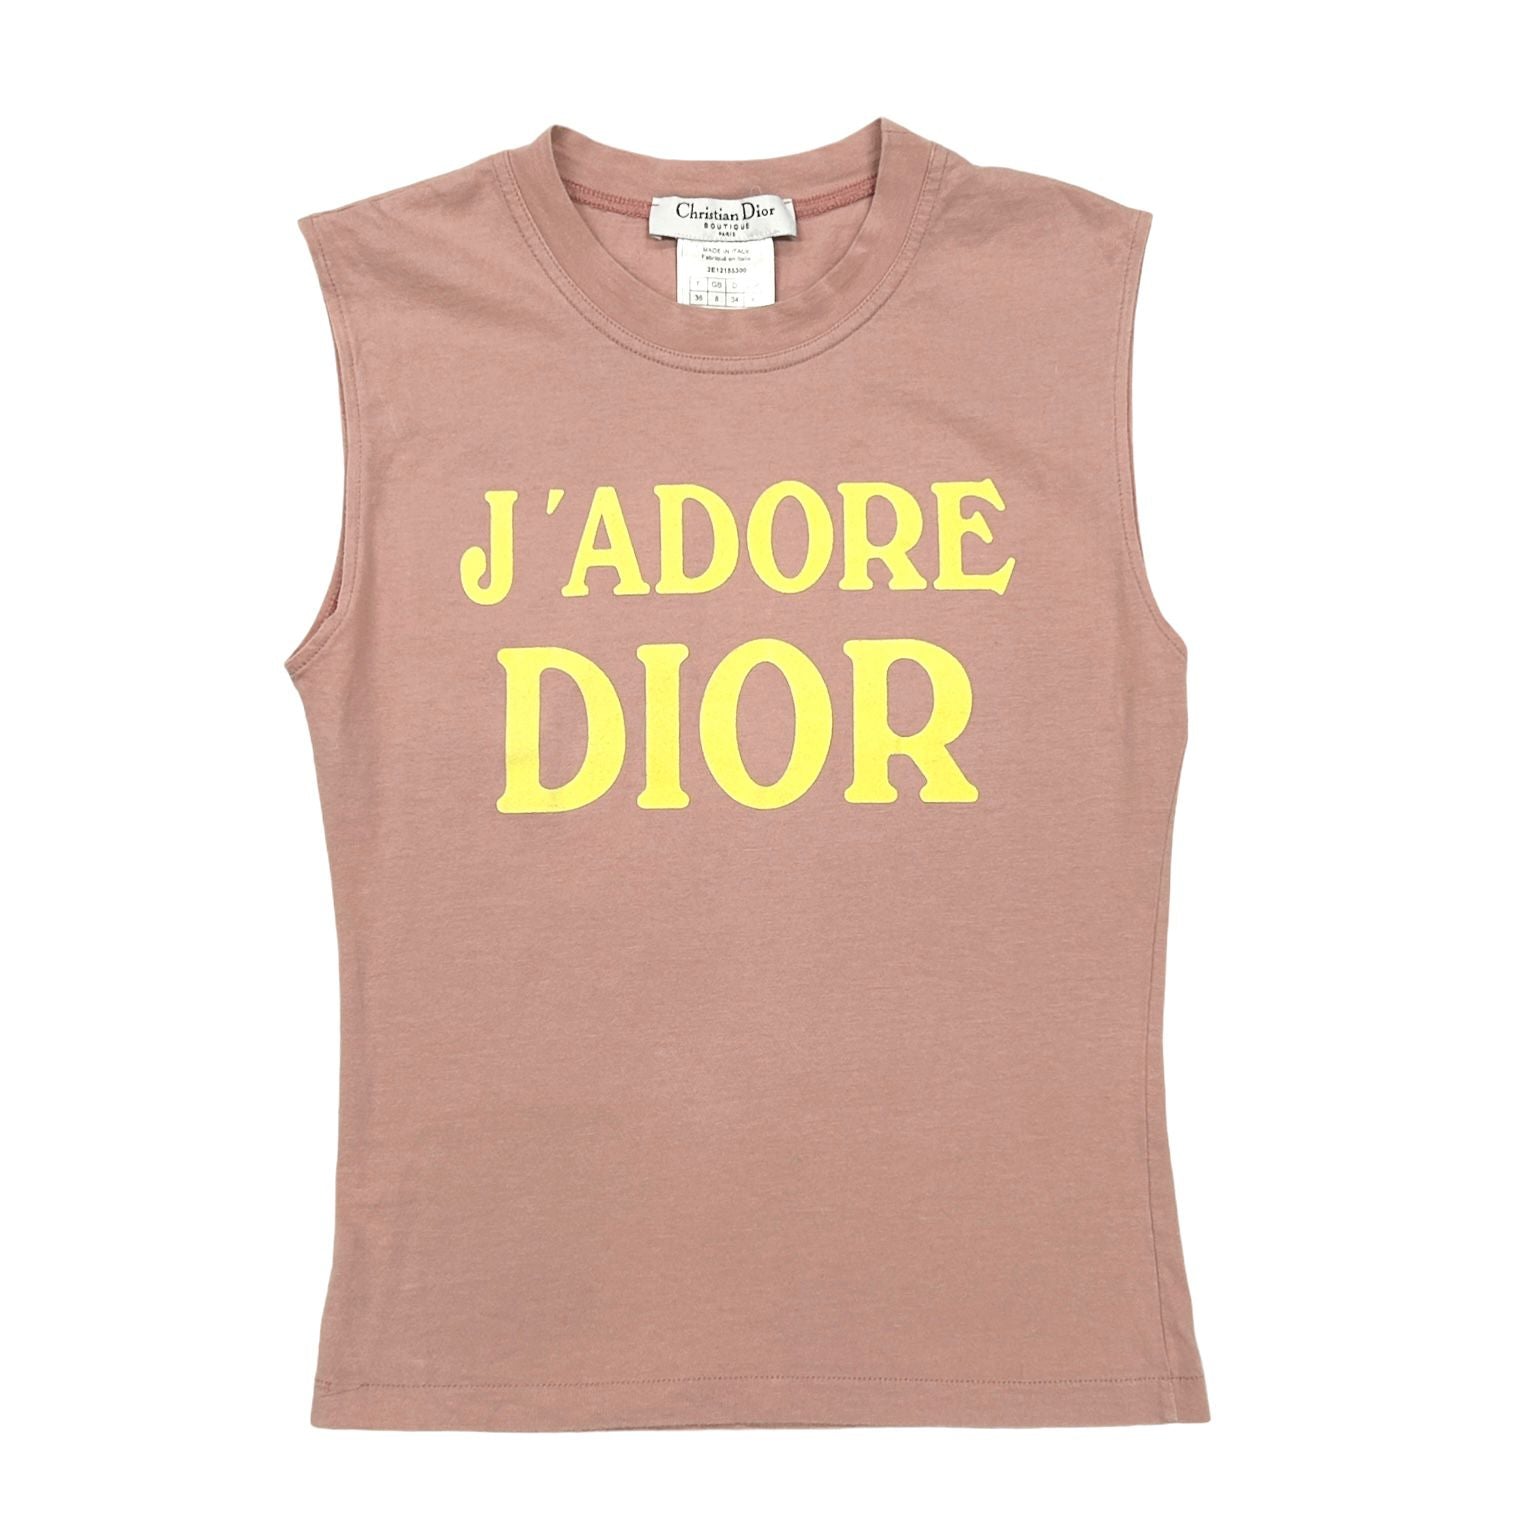 Dior – Treasures of NYC